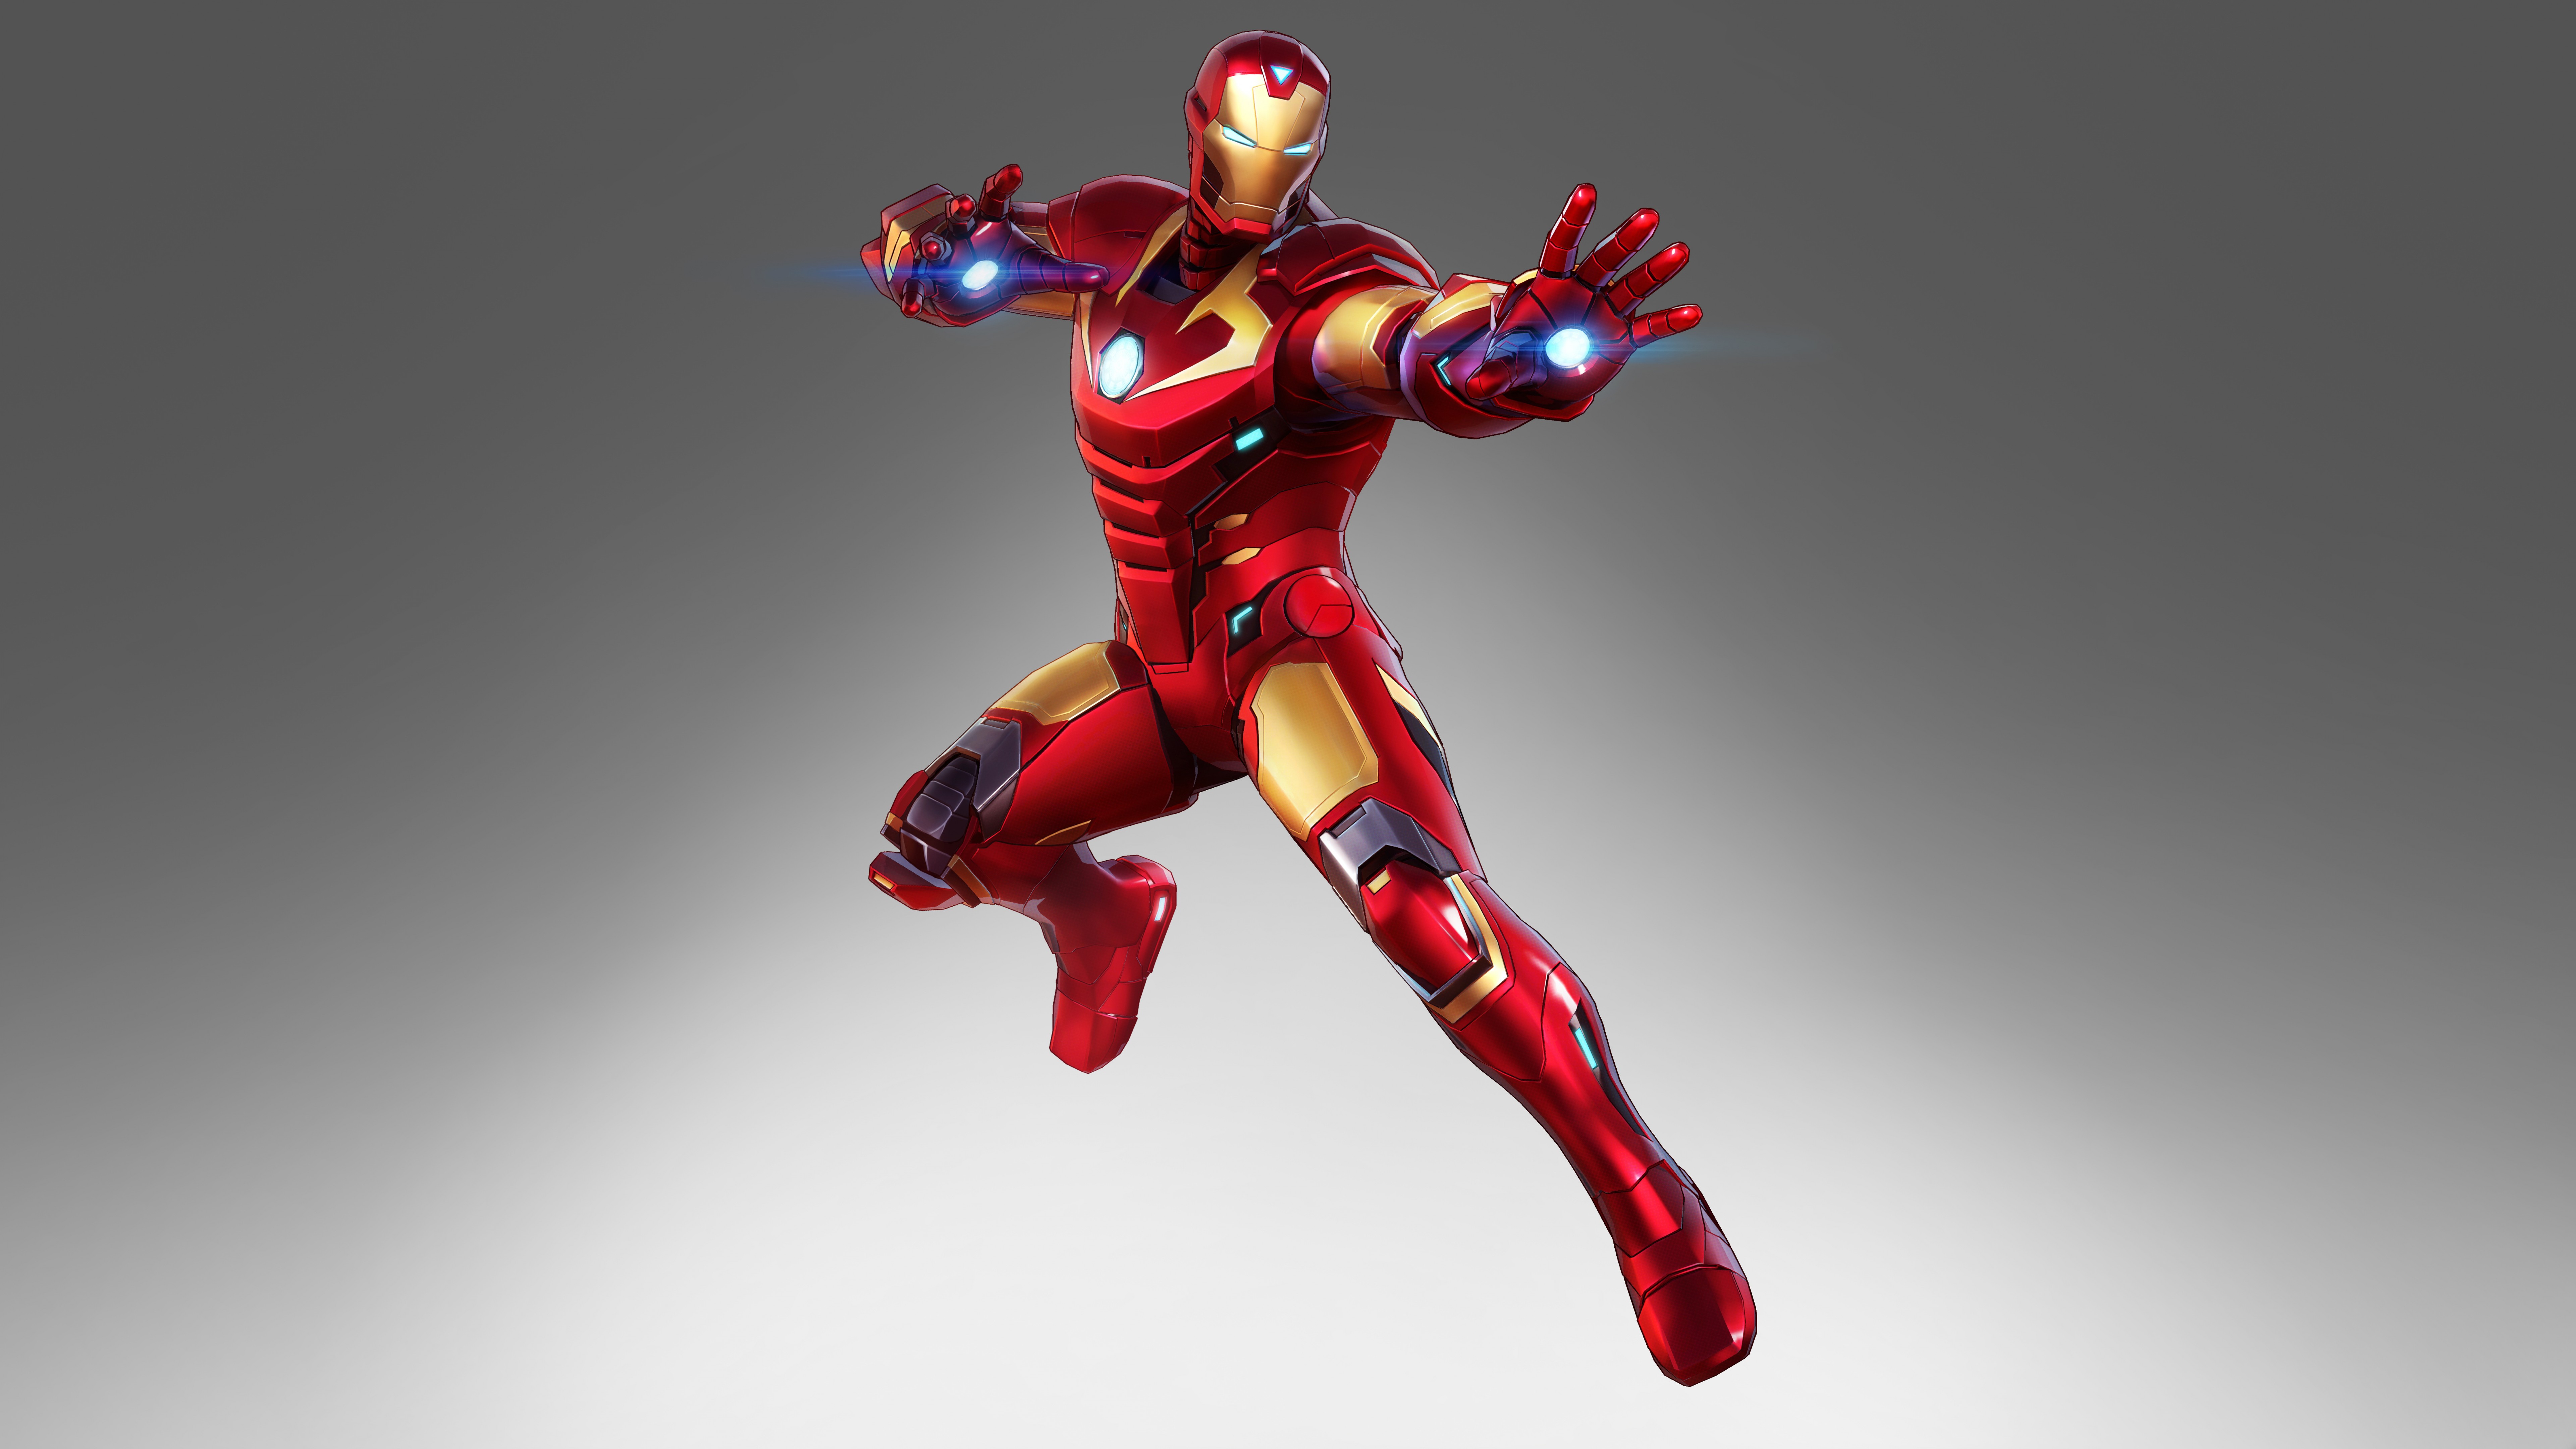 Wallpaper ID 1659381  Iron Man Marvel Comics 8K free download